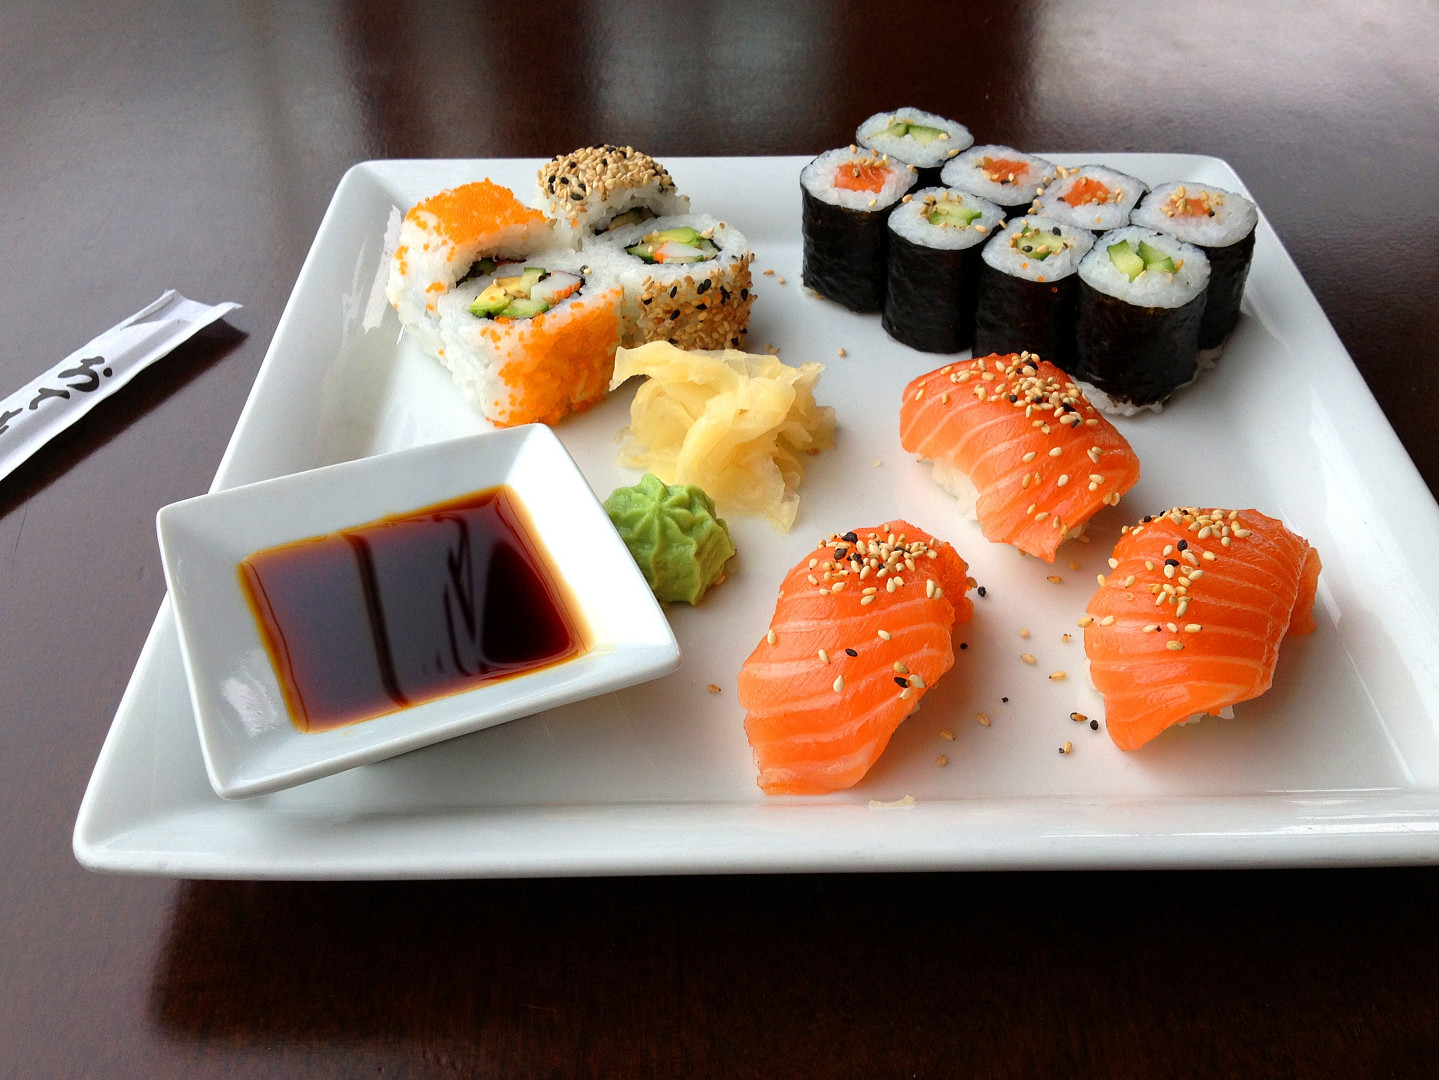 jak se jí japonské jídlo sushi? wasabi a sójovka se nemíchají, také pozor na zázvor